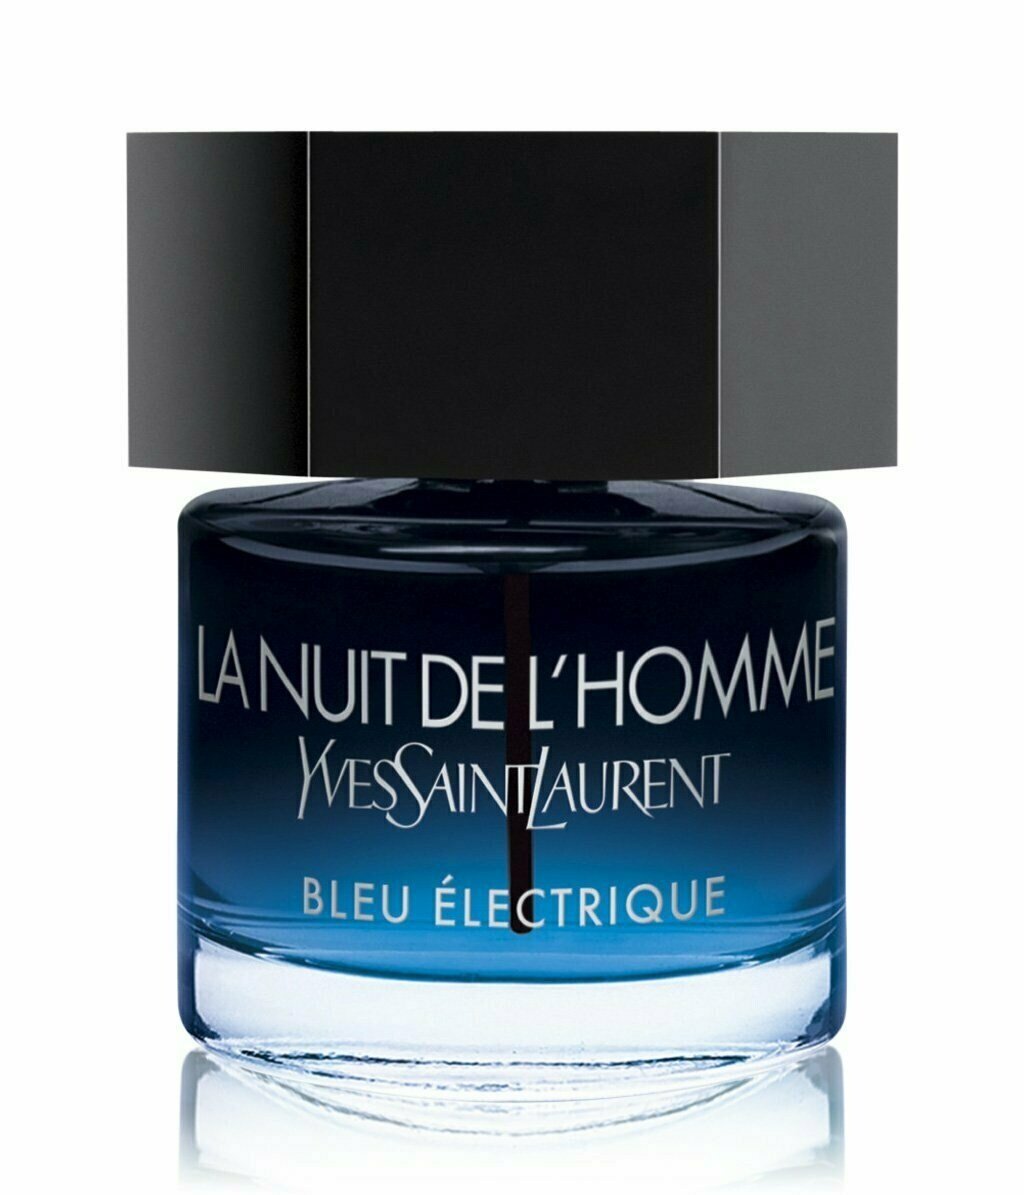 La Nuit de L'Homme Bleu Électrique by Yves Saint Laurent » Reviews